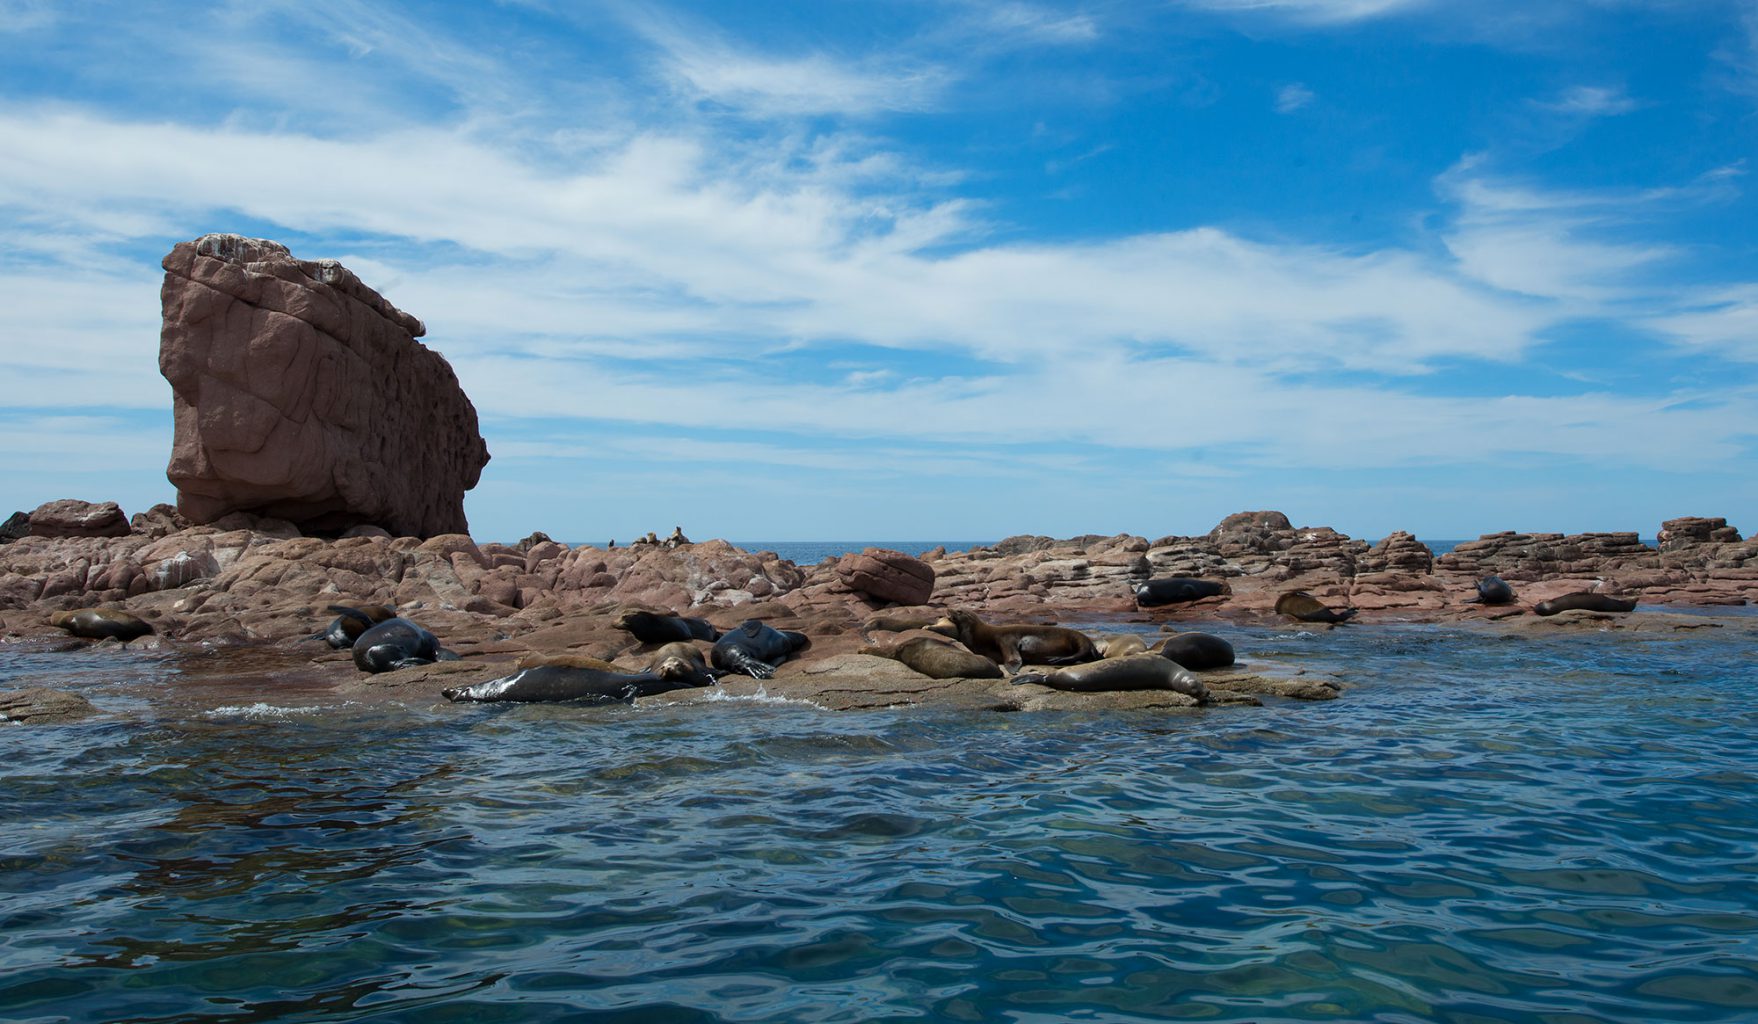 California Sea Lions at Los Islotes, Sea of Cortez, Mexico